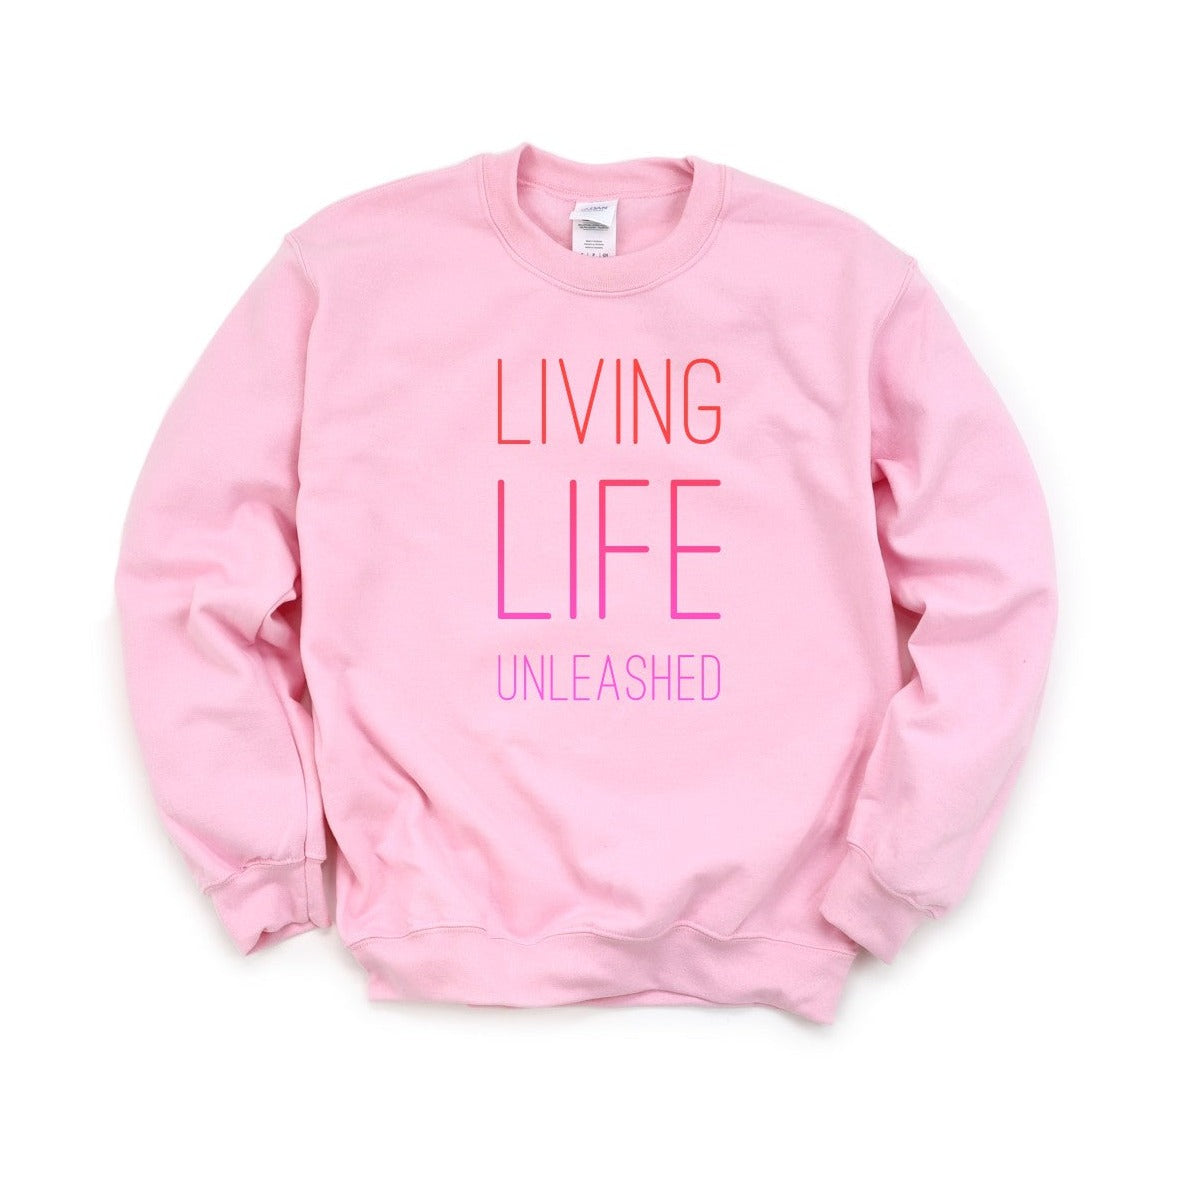 Living Life Unleashed Sweatshirt